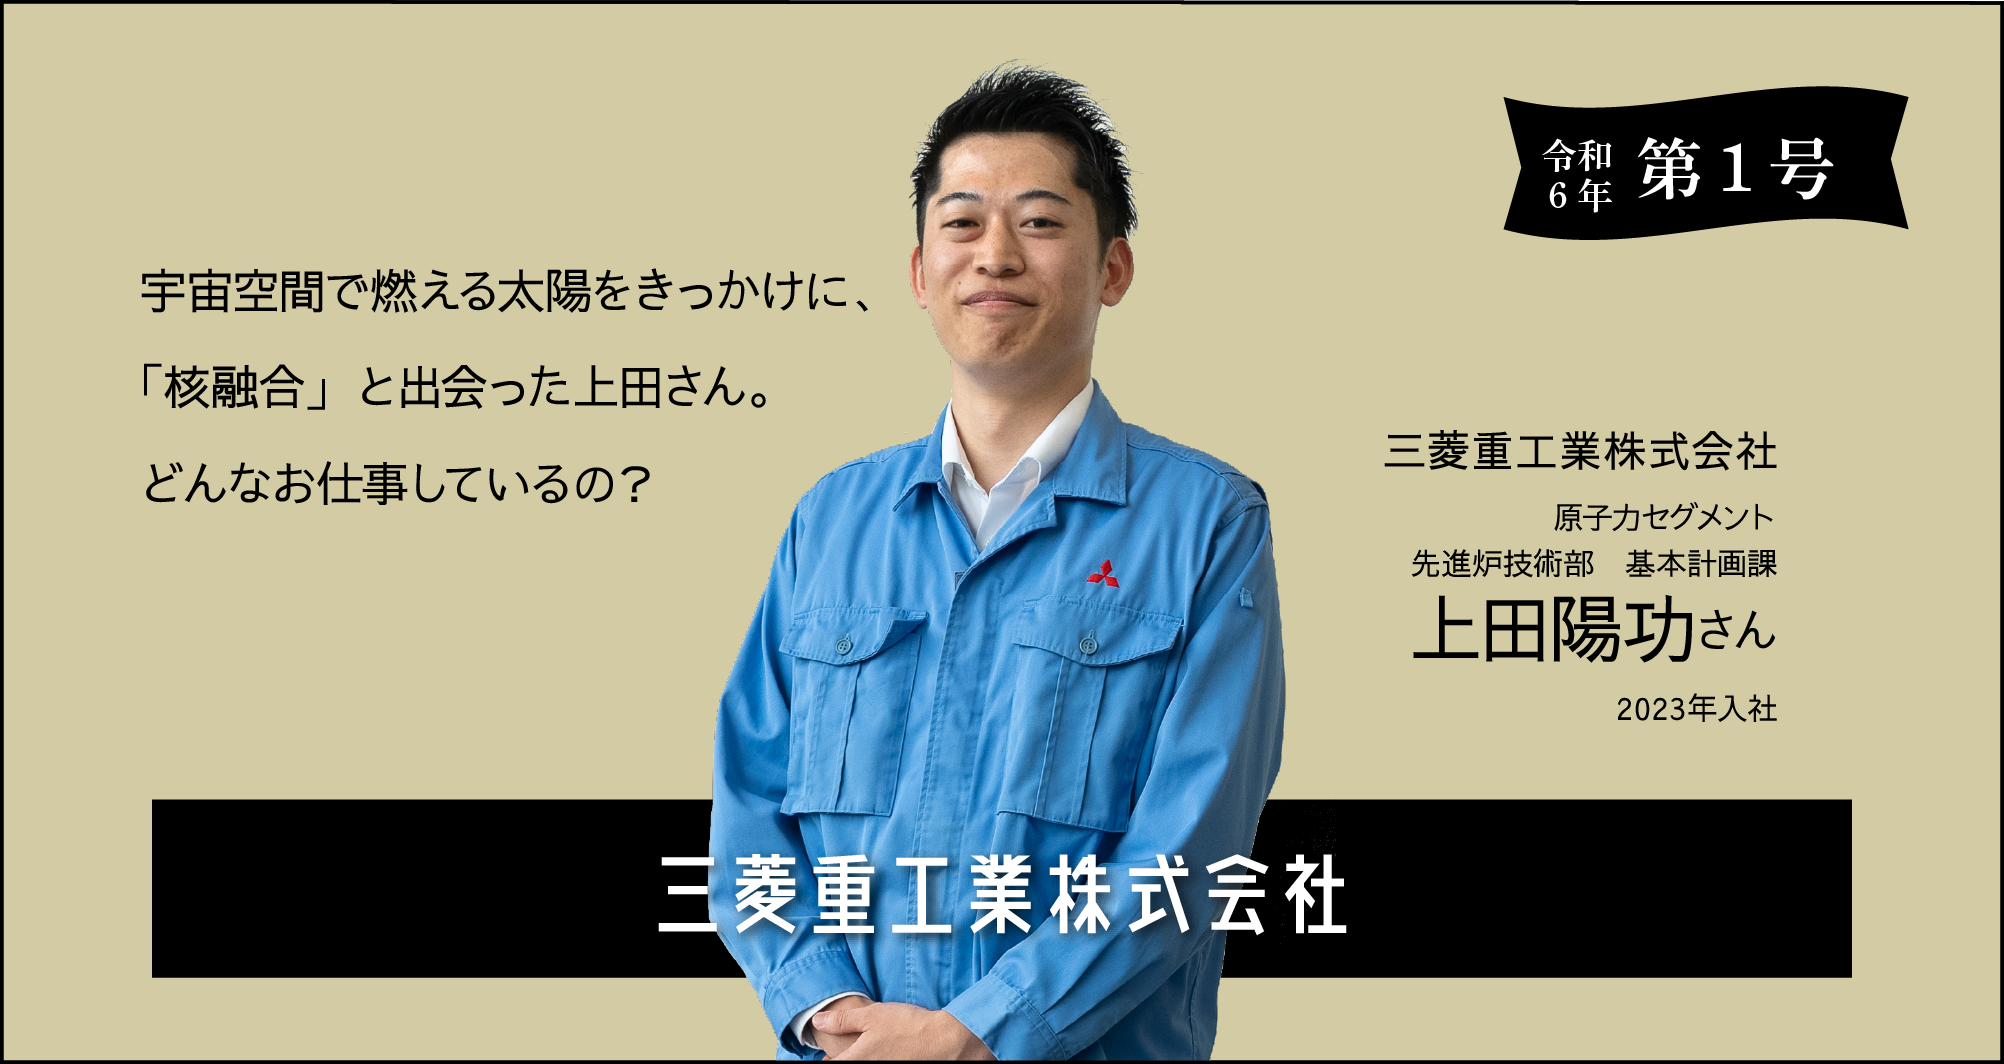 令和6年 第一号 三菱重工業株式会社 上田陽功さんに聞く！